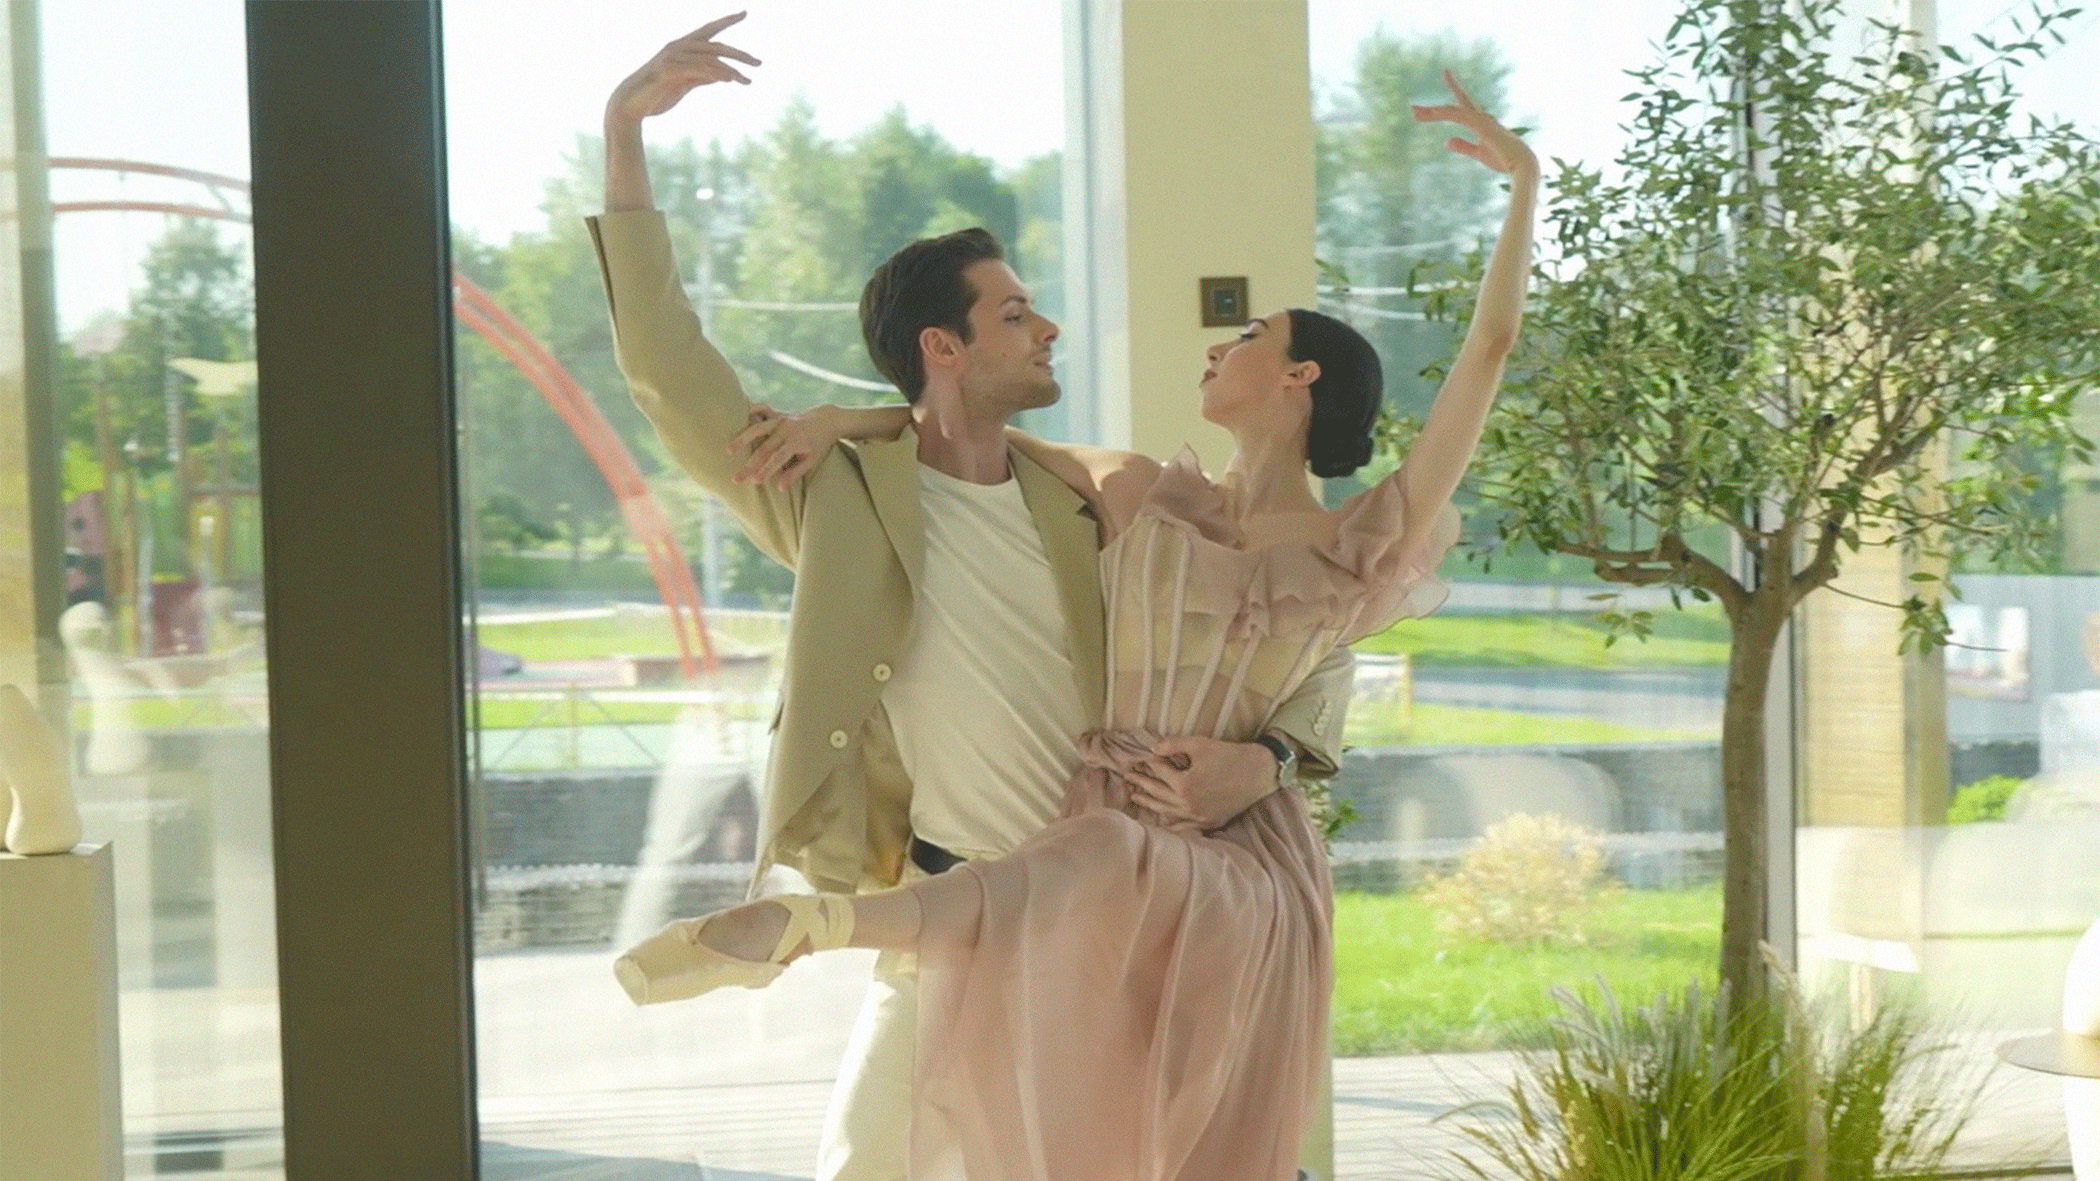 Элеонора Севенард и другие герои Tatler — о балете чувствах и красоте в повседневности